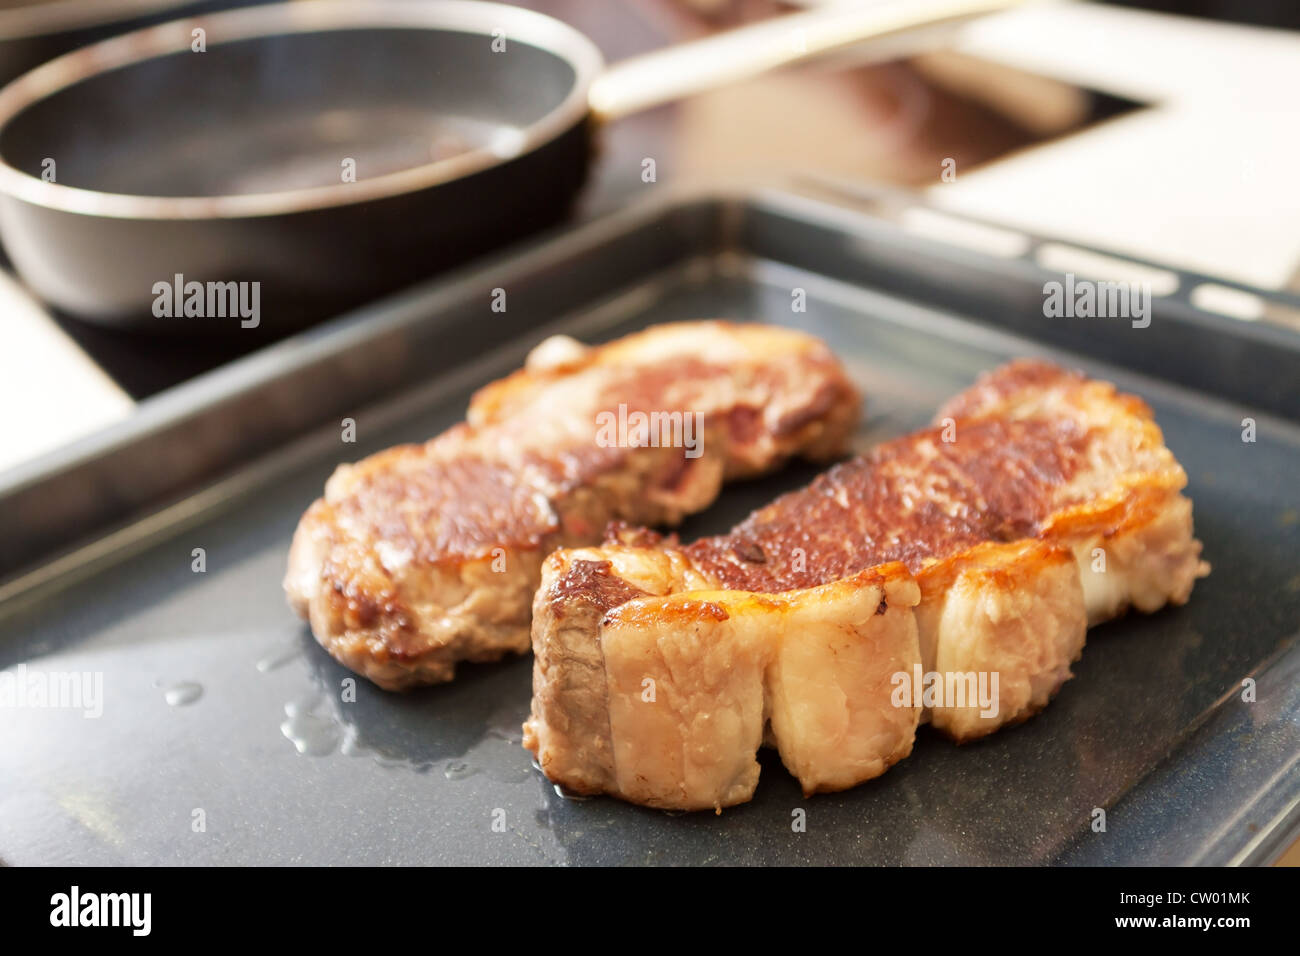 steak de boeuf Banque D'Images